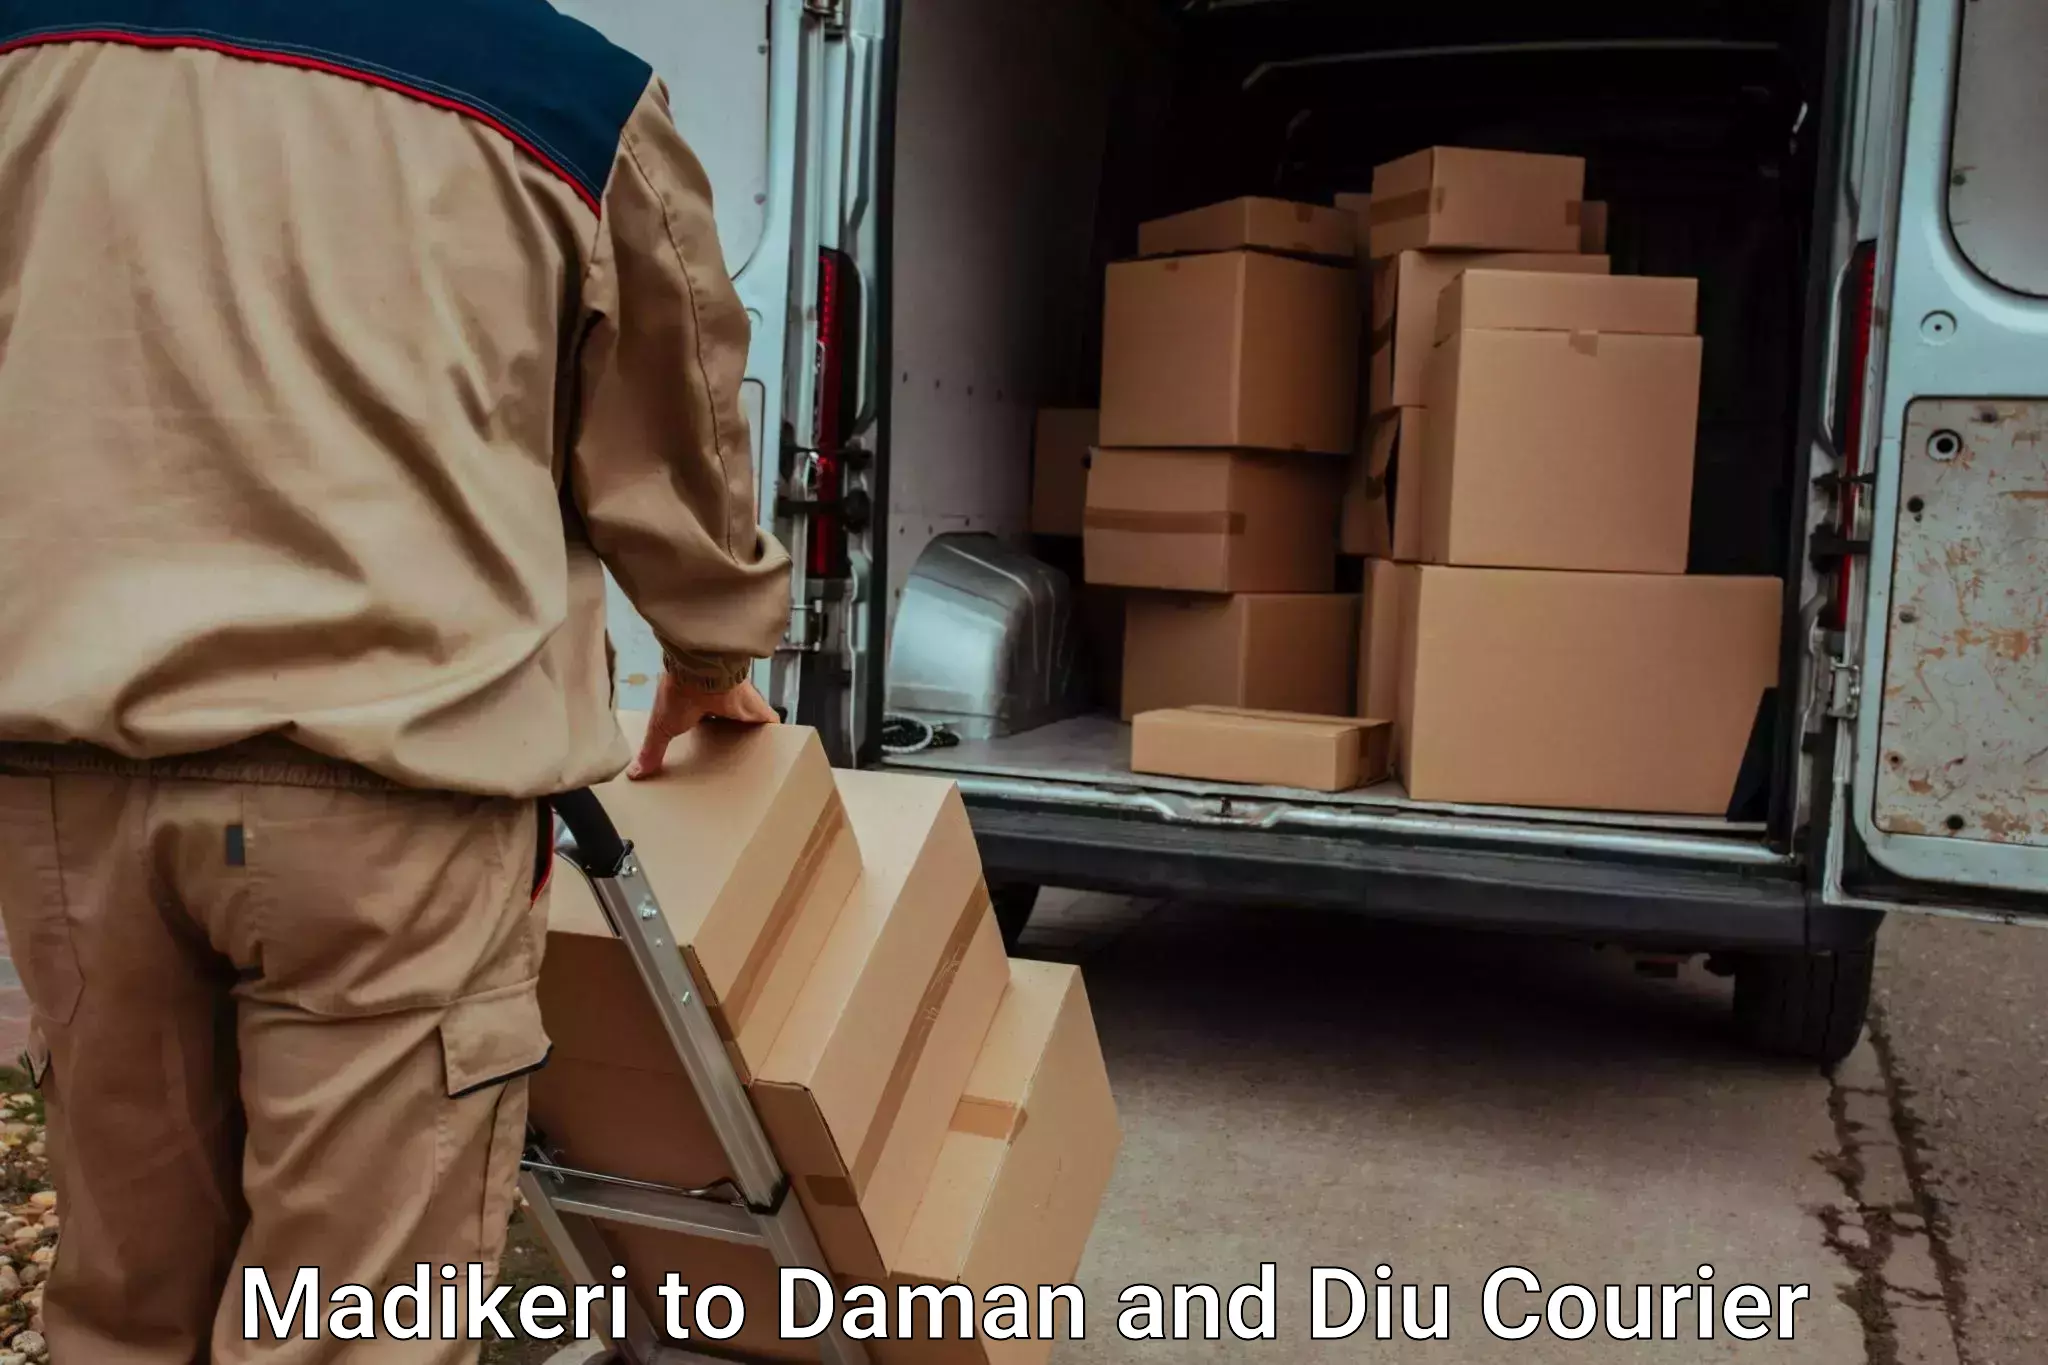 Baggage transport professionals Madikeri to Daman